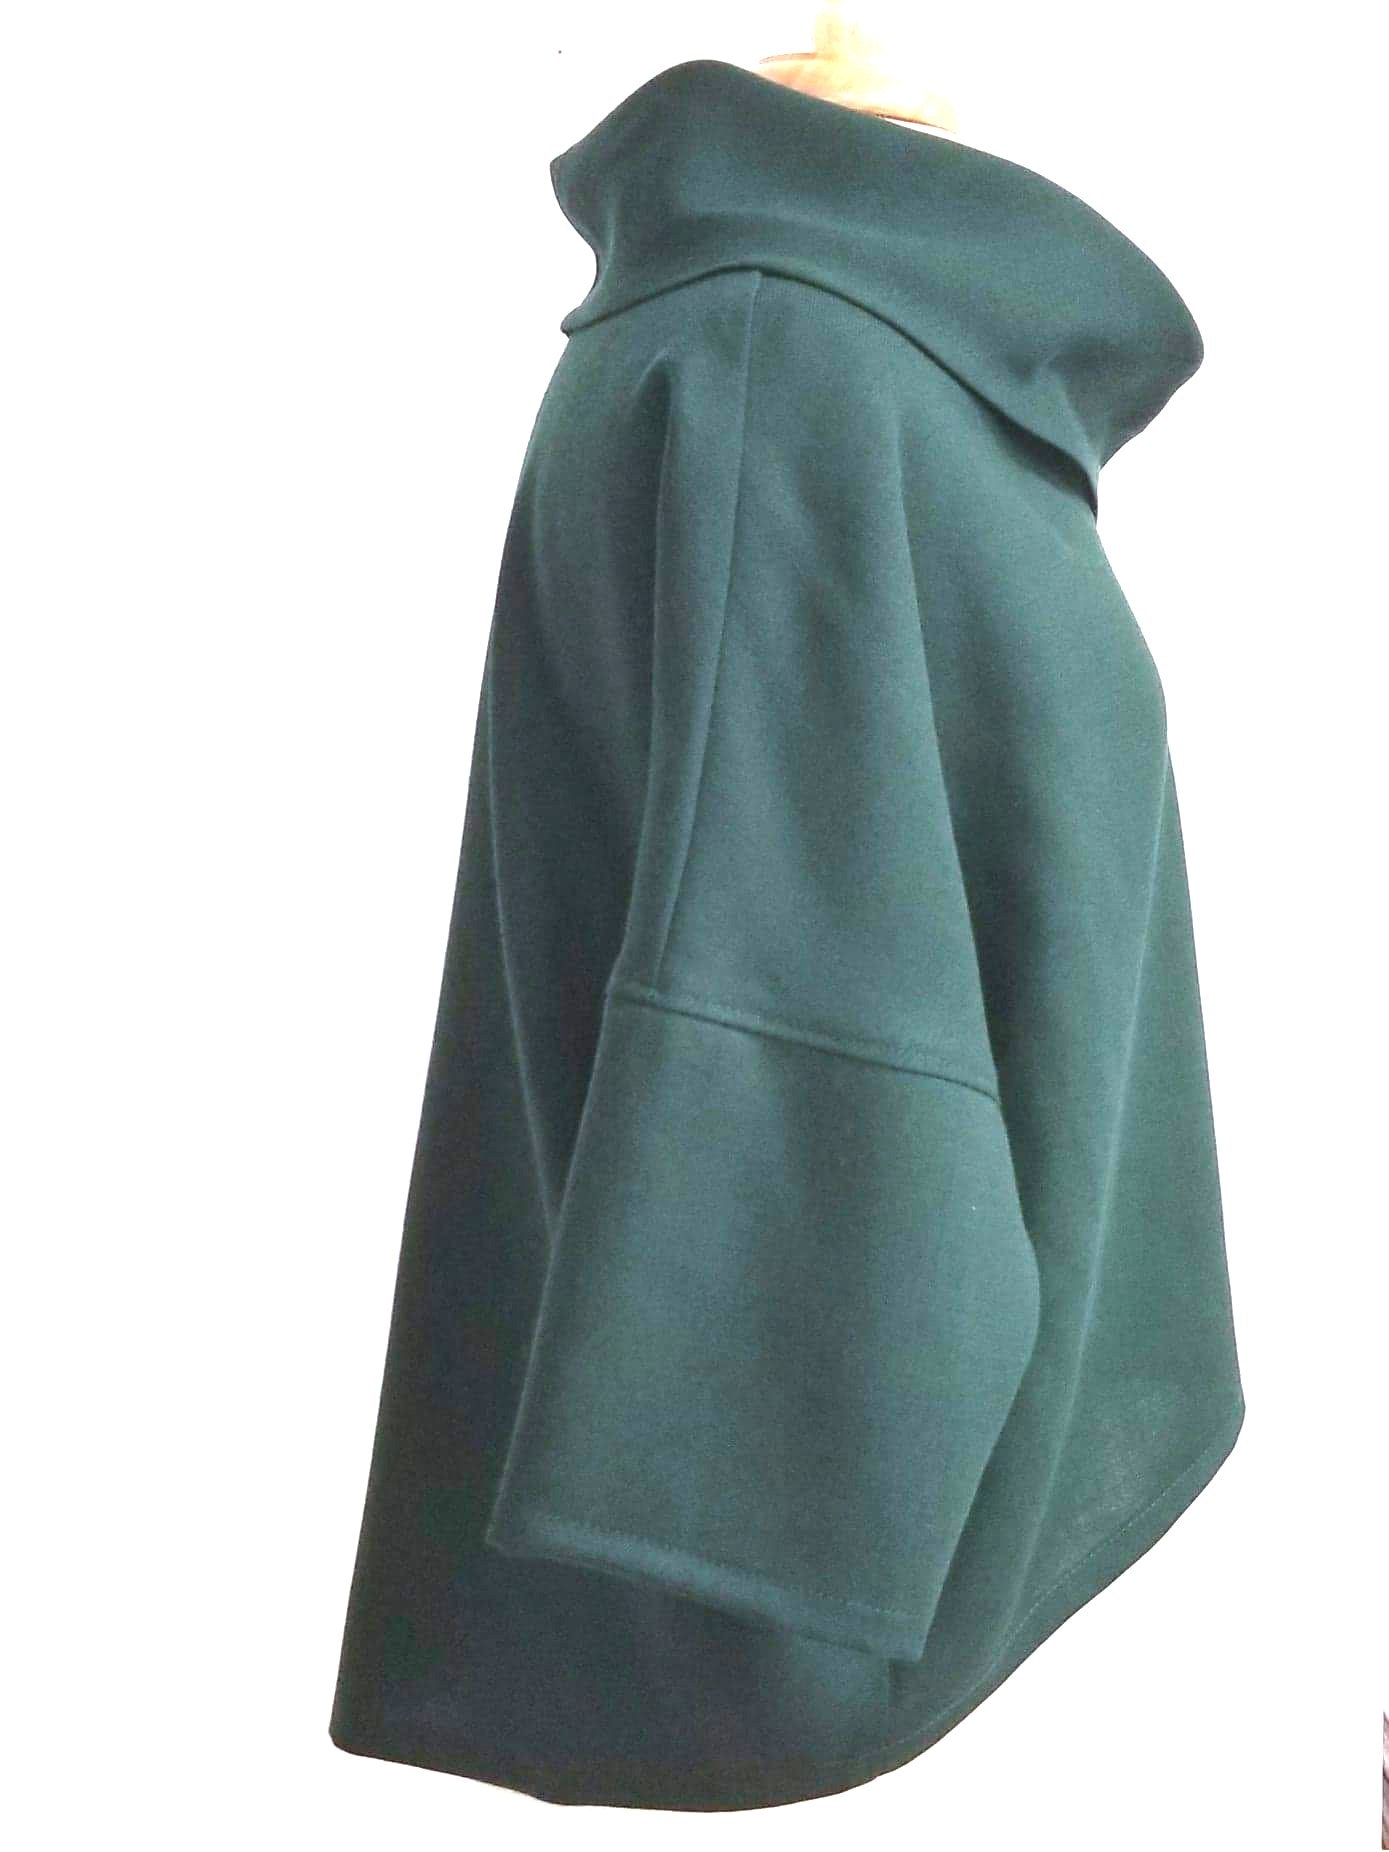 Pèlerine, veste pour femme en pure laine vert forêt - Christine Mercier atelier-boutique